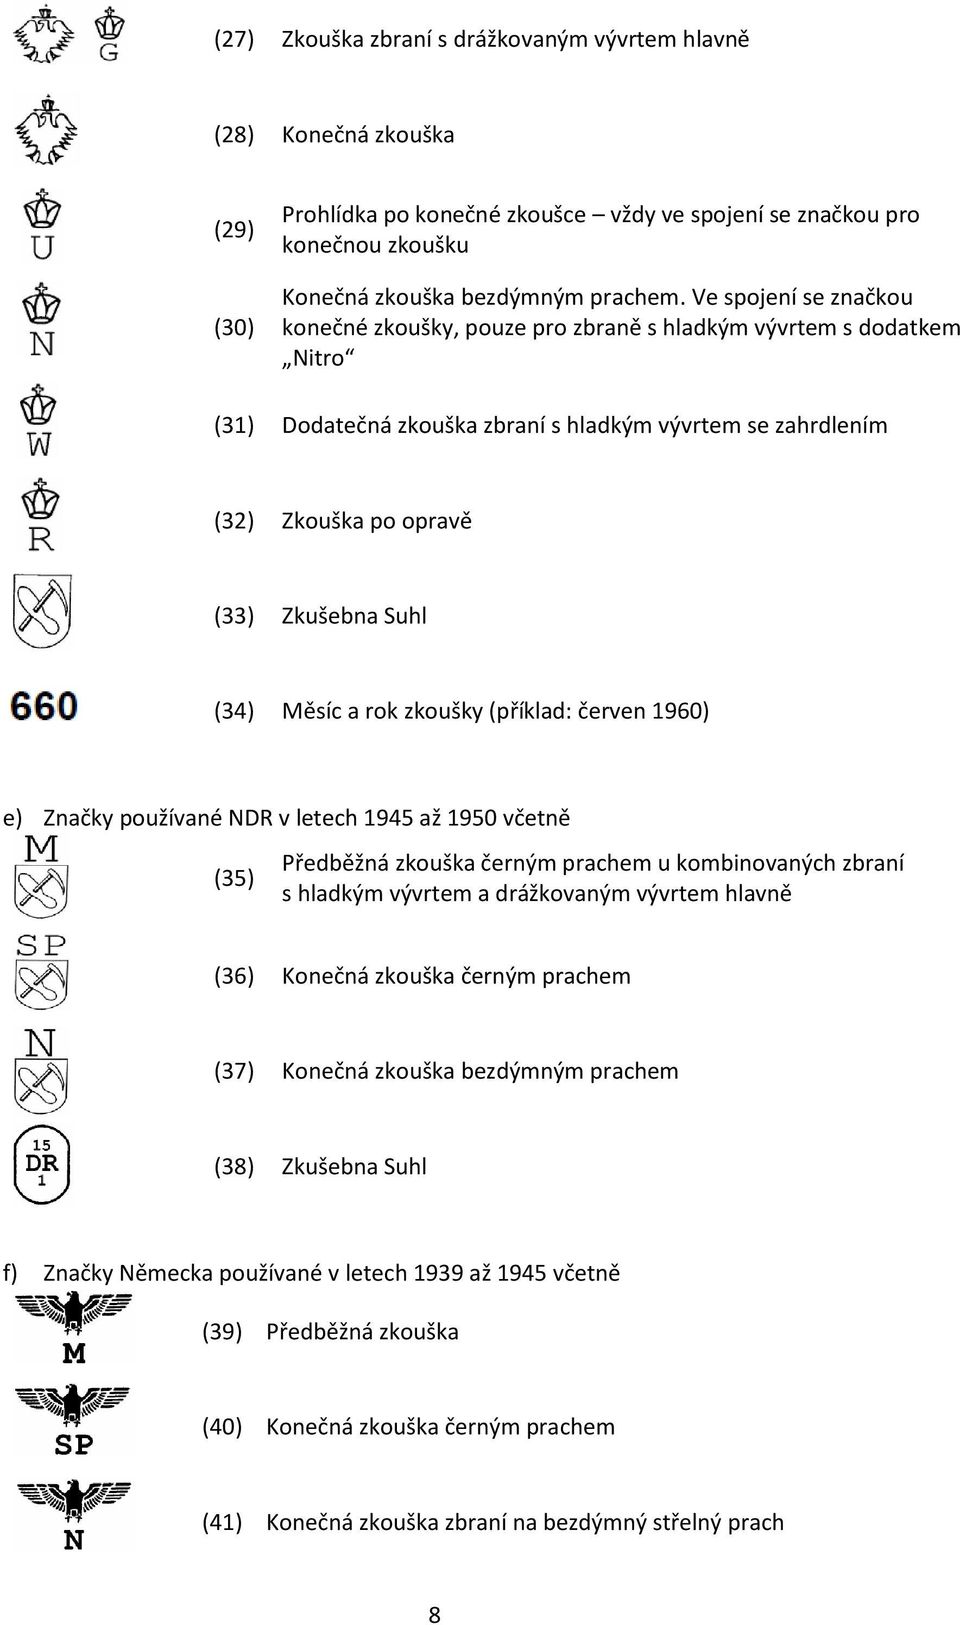 Měsíc a rok zkoušky (příklad: červen 1960) e) Značky používané NDR v letech 1945 až 1950 včetně (35) Předběžná zkouška černým prachem u kombinovaných zbraní s hladkým vývrtem a drážkovaným vývrtem